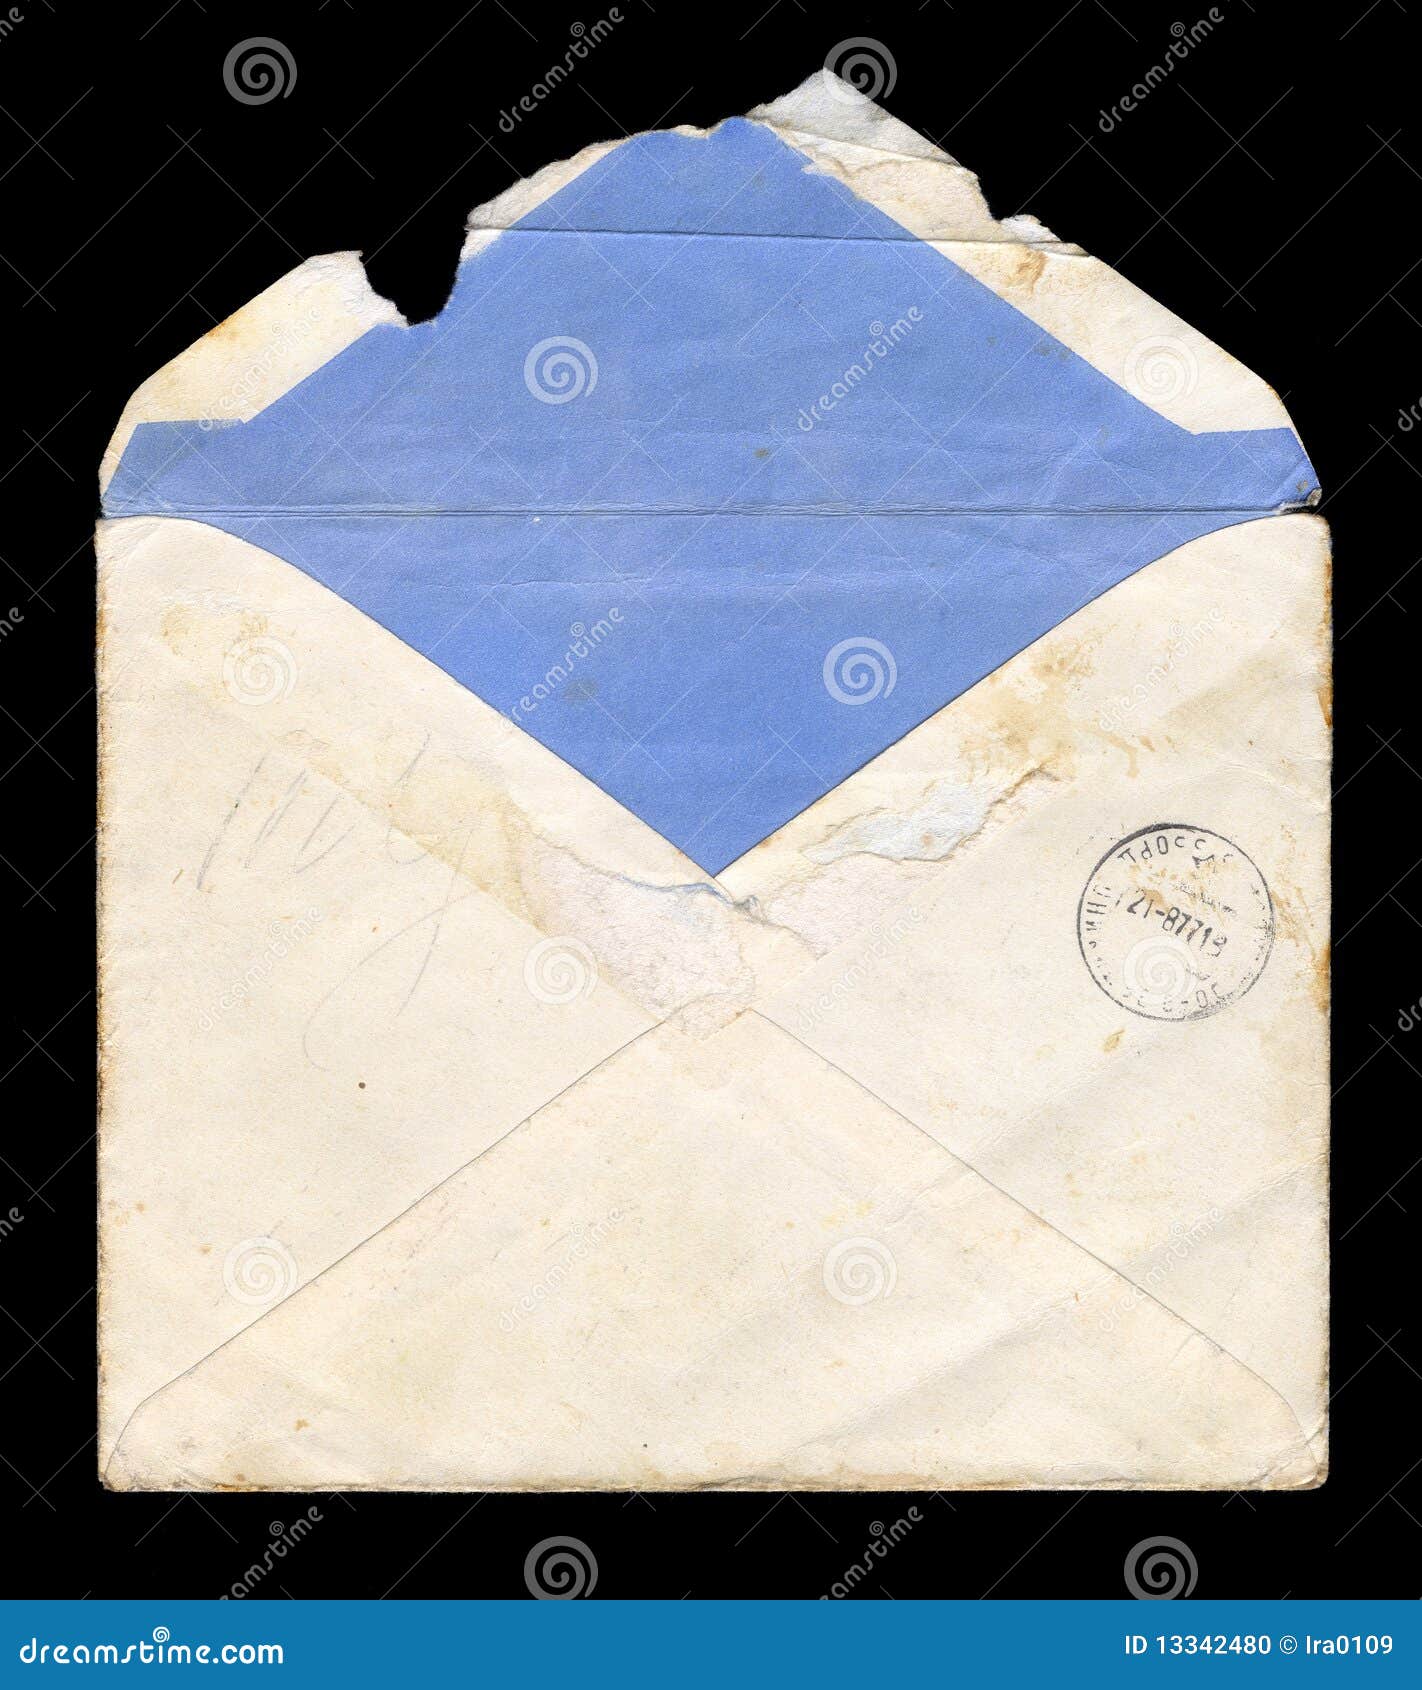 Надорванный конверт